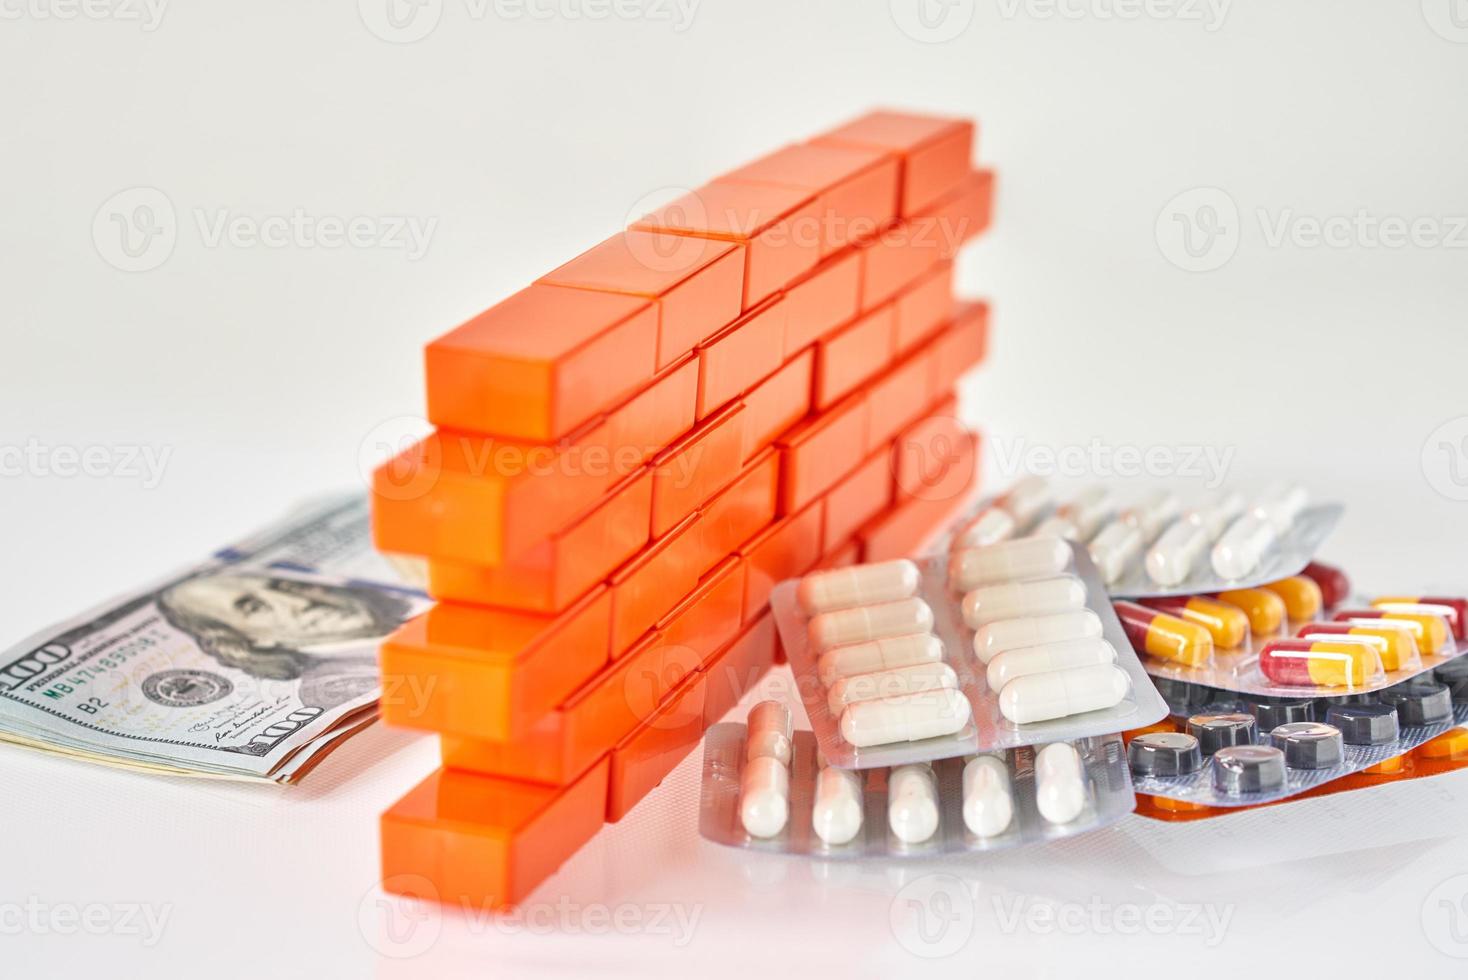 medizinische pillen und dollarnoten geld getrennt mit einer spielzeugmauer foto